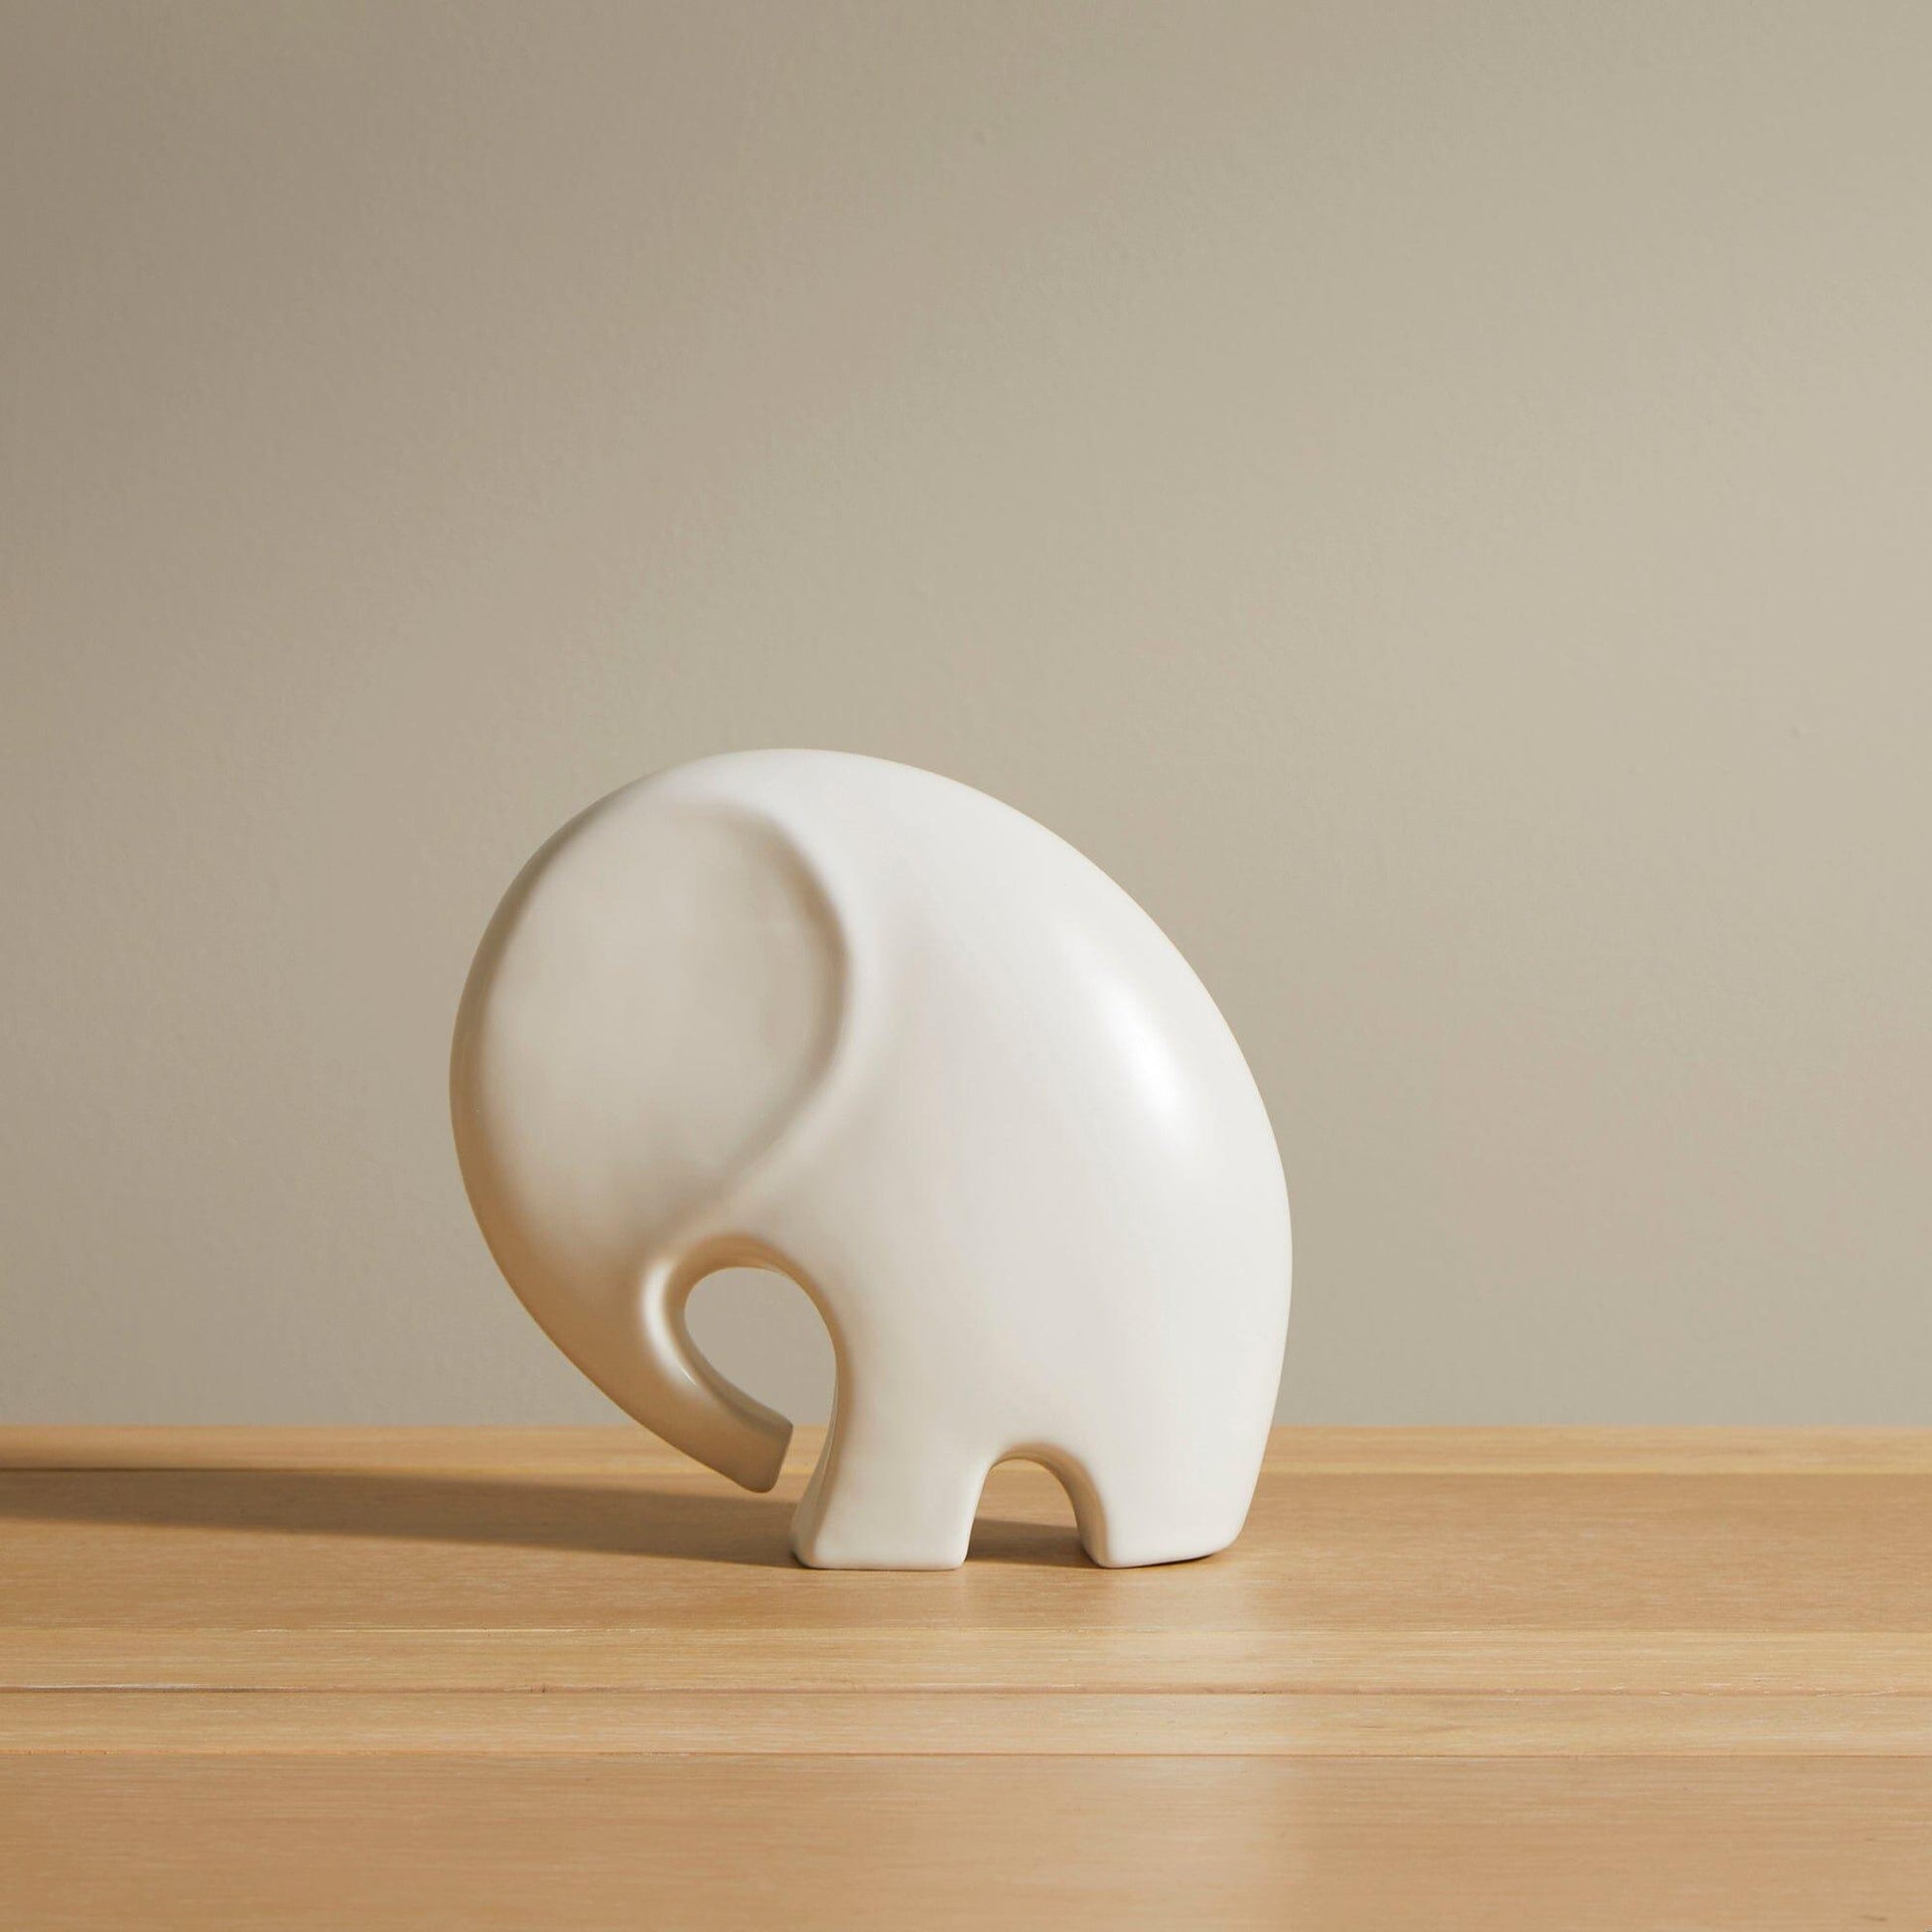 Meru 18cm Ceramic Elephant Ornament - White - Laura James